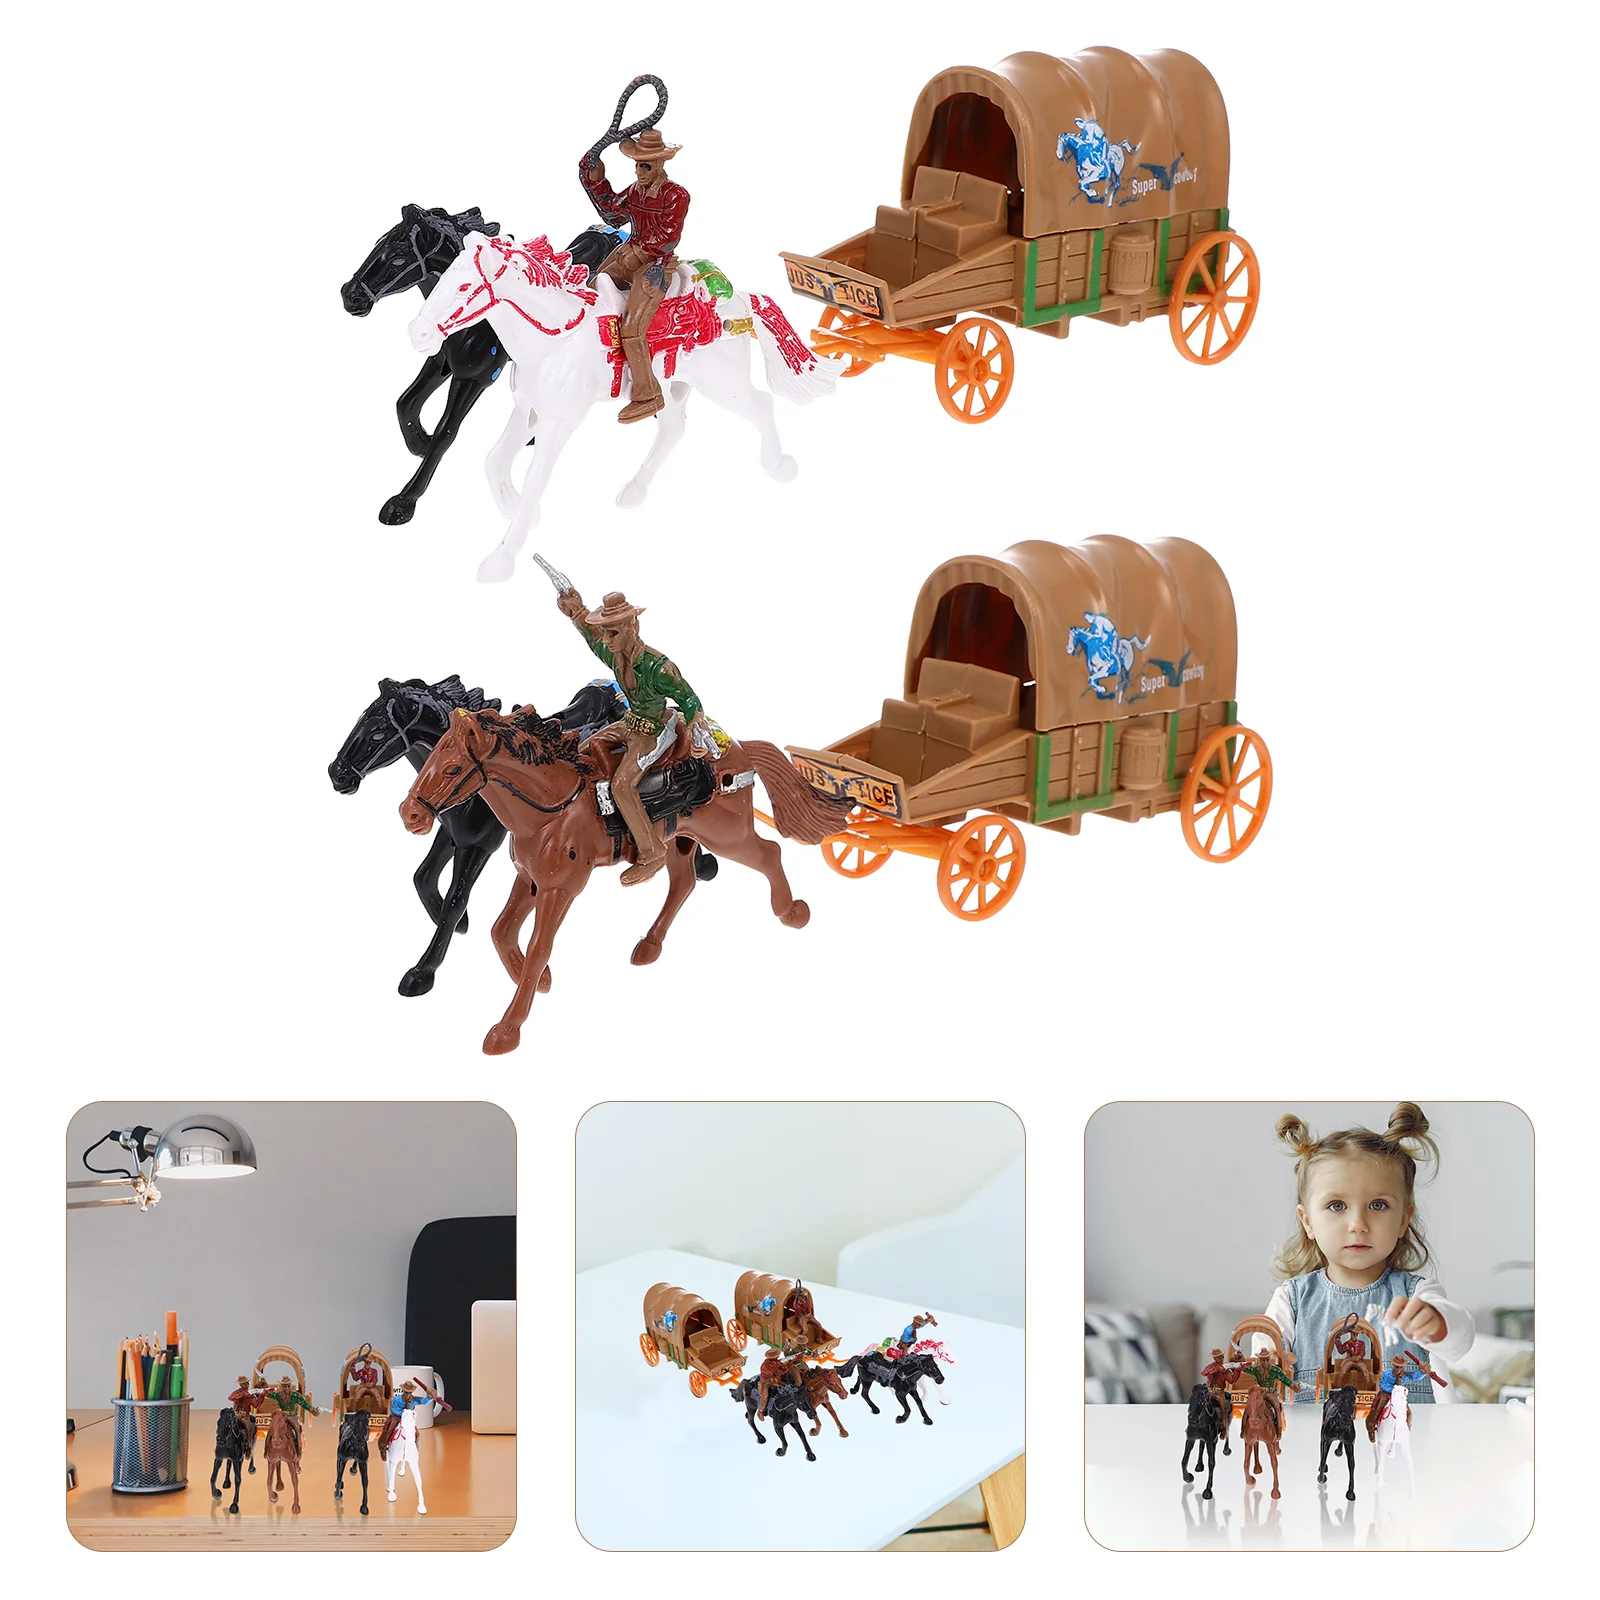 

Ковбойская Игрушечная модель, 2 набора, домашние украшения в западном стиле, пластиковые игрушки, декоративные элементы для детской столешницы